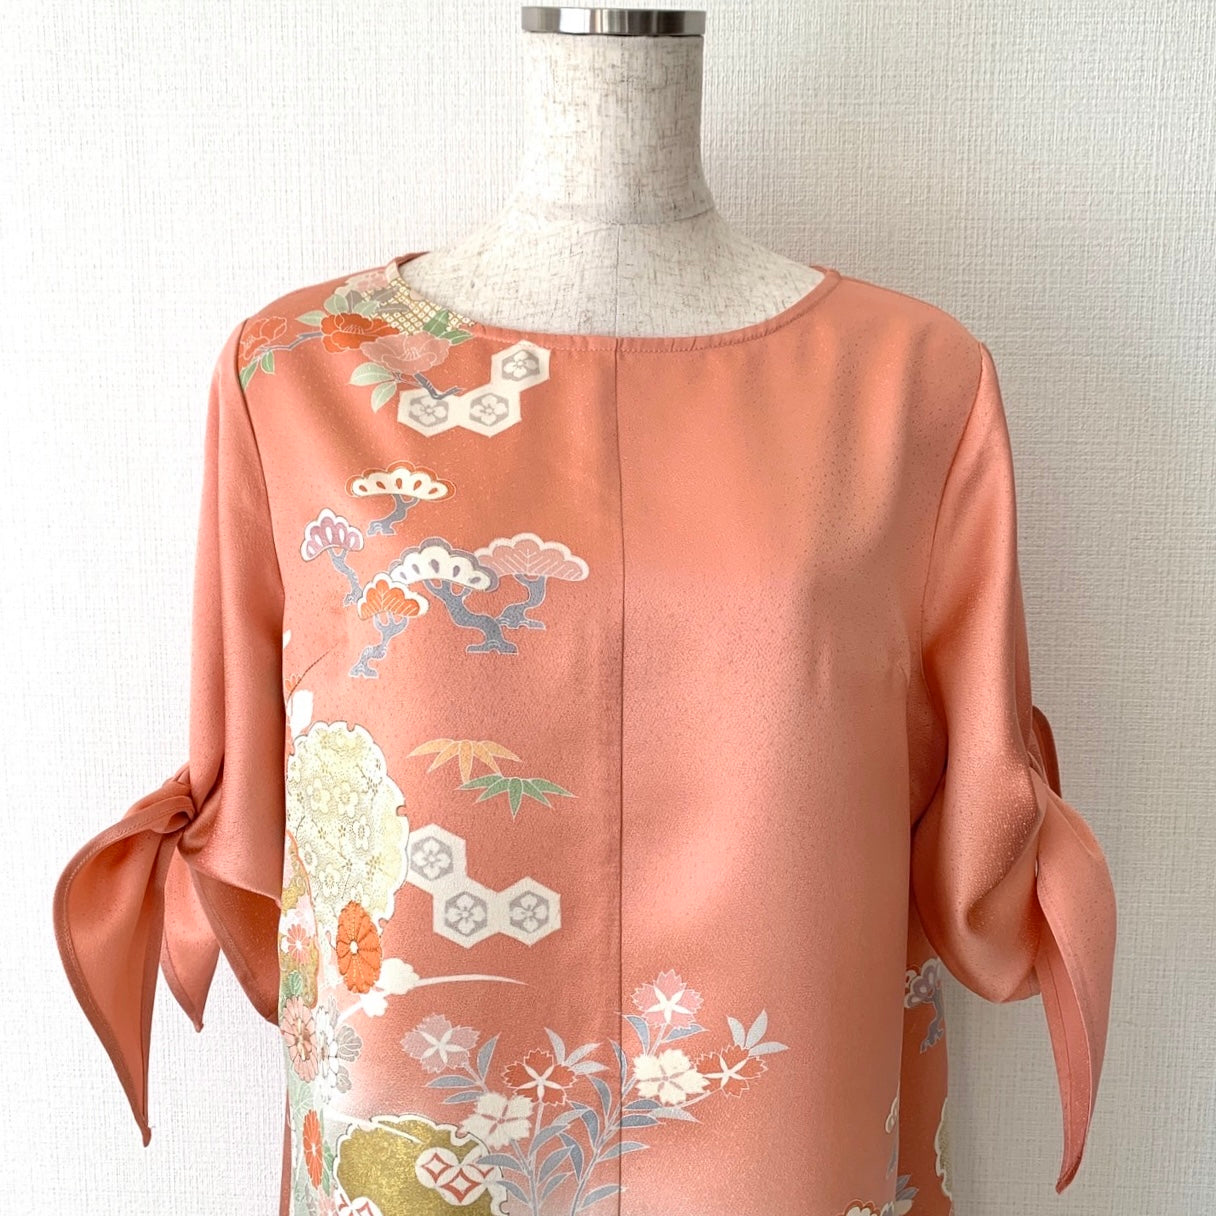 Kimono robe en soie, Houmongi 訪問着, fabriquée à la main, recyclée #pre27